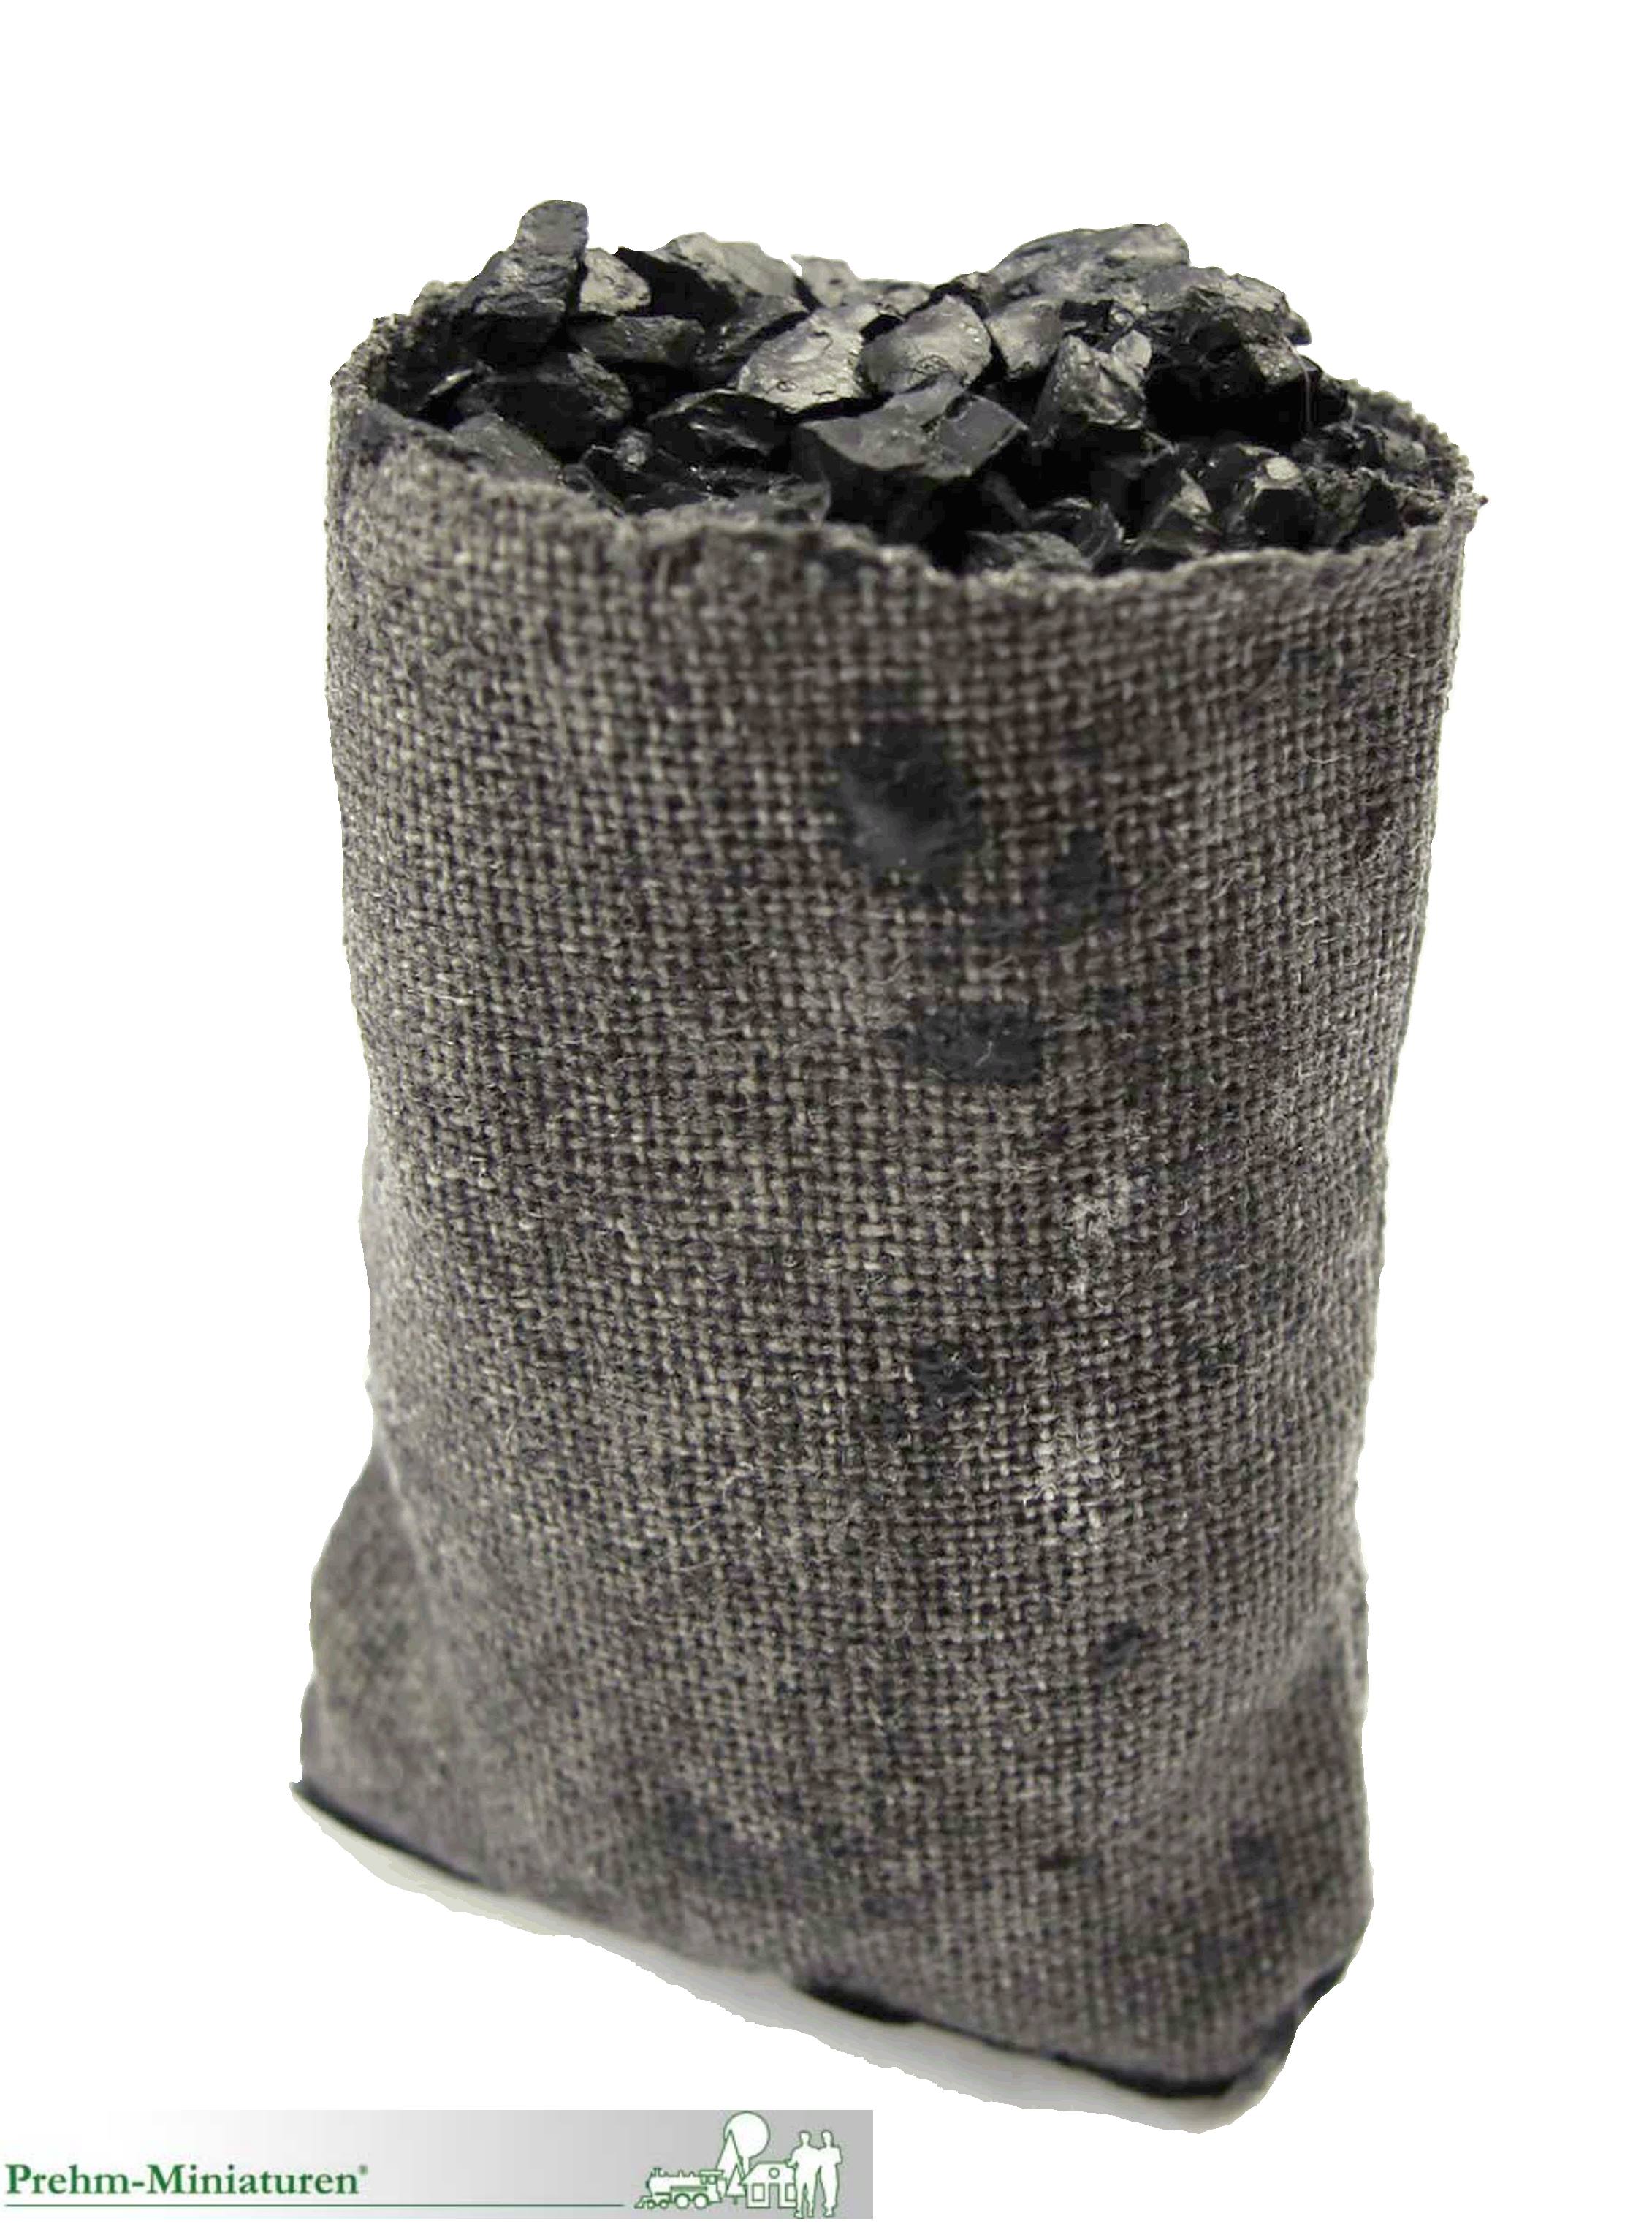 Kohlesack offen - passend zum Förderband oder der Kohlehandlung - Neuheit 2021 - Art. Nr. 550616